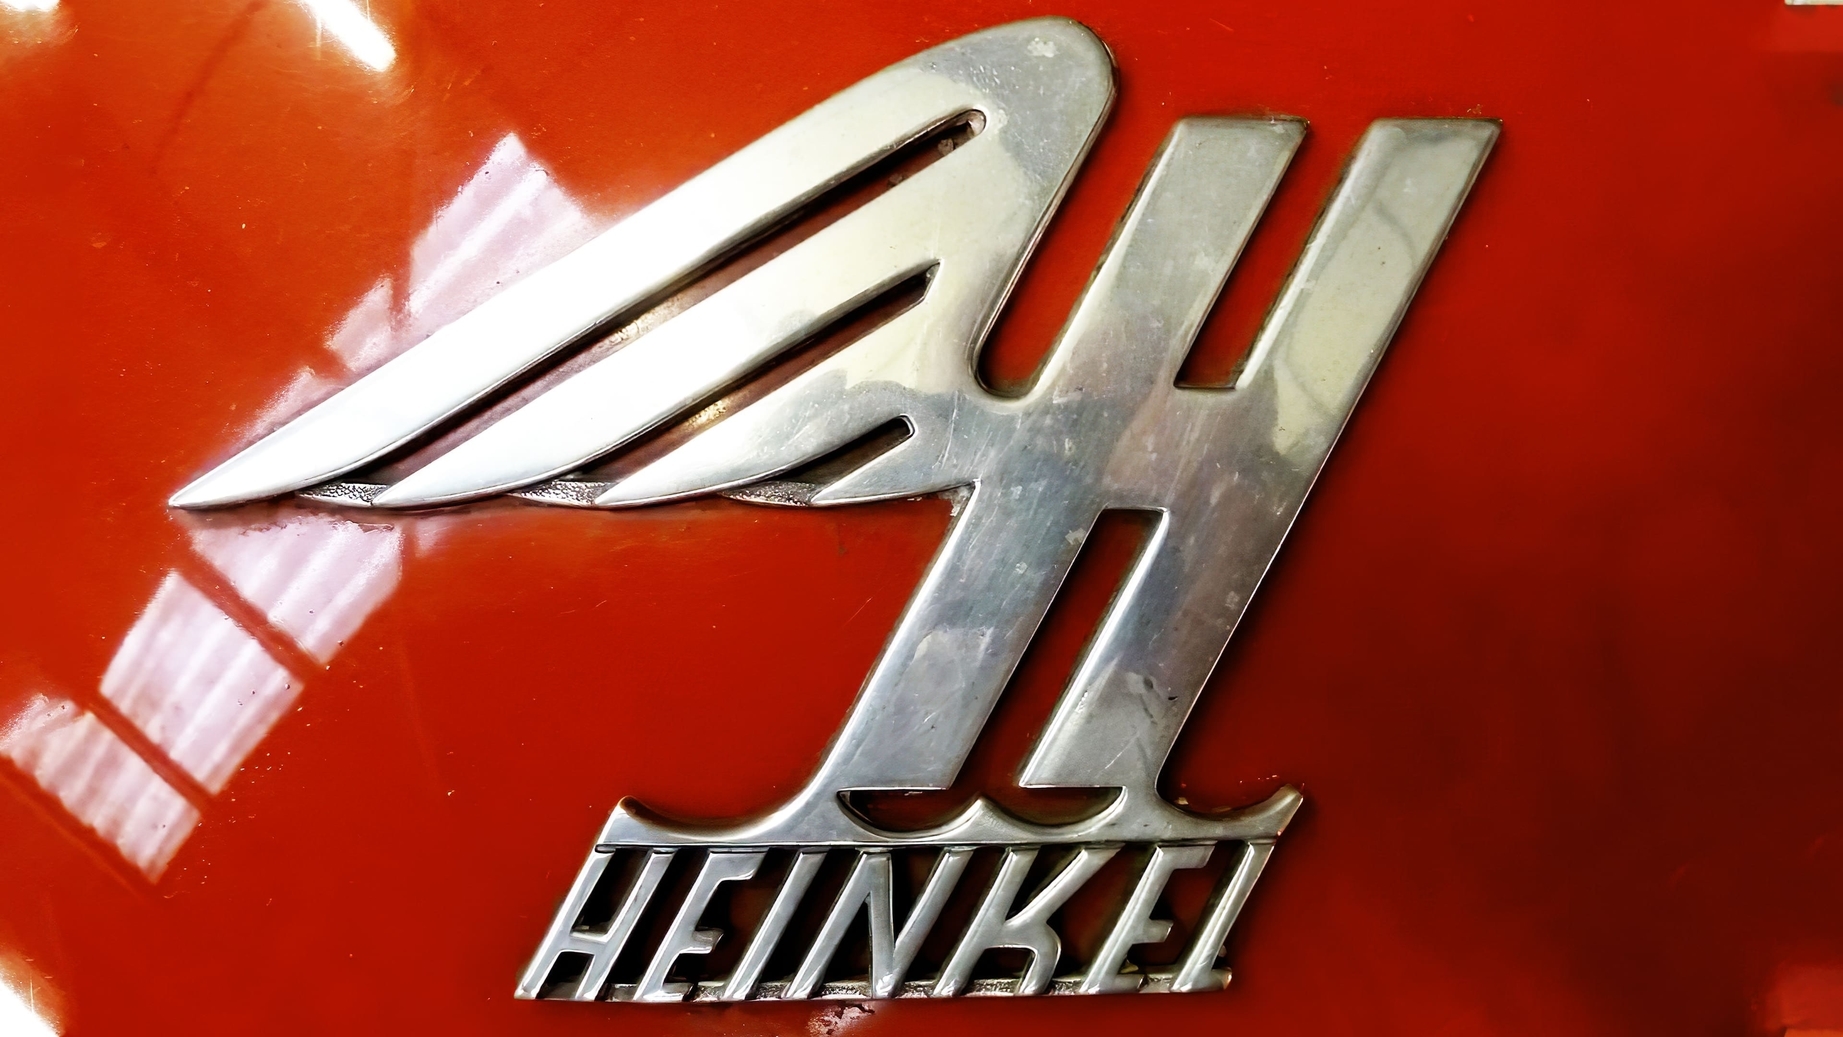 Heinkel sign